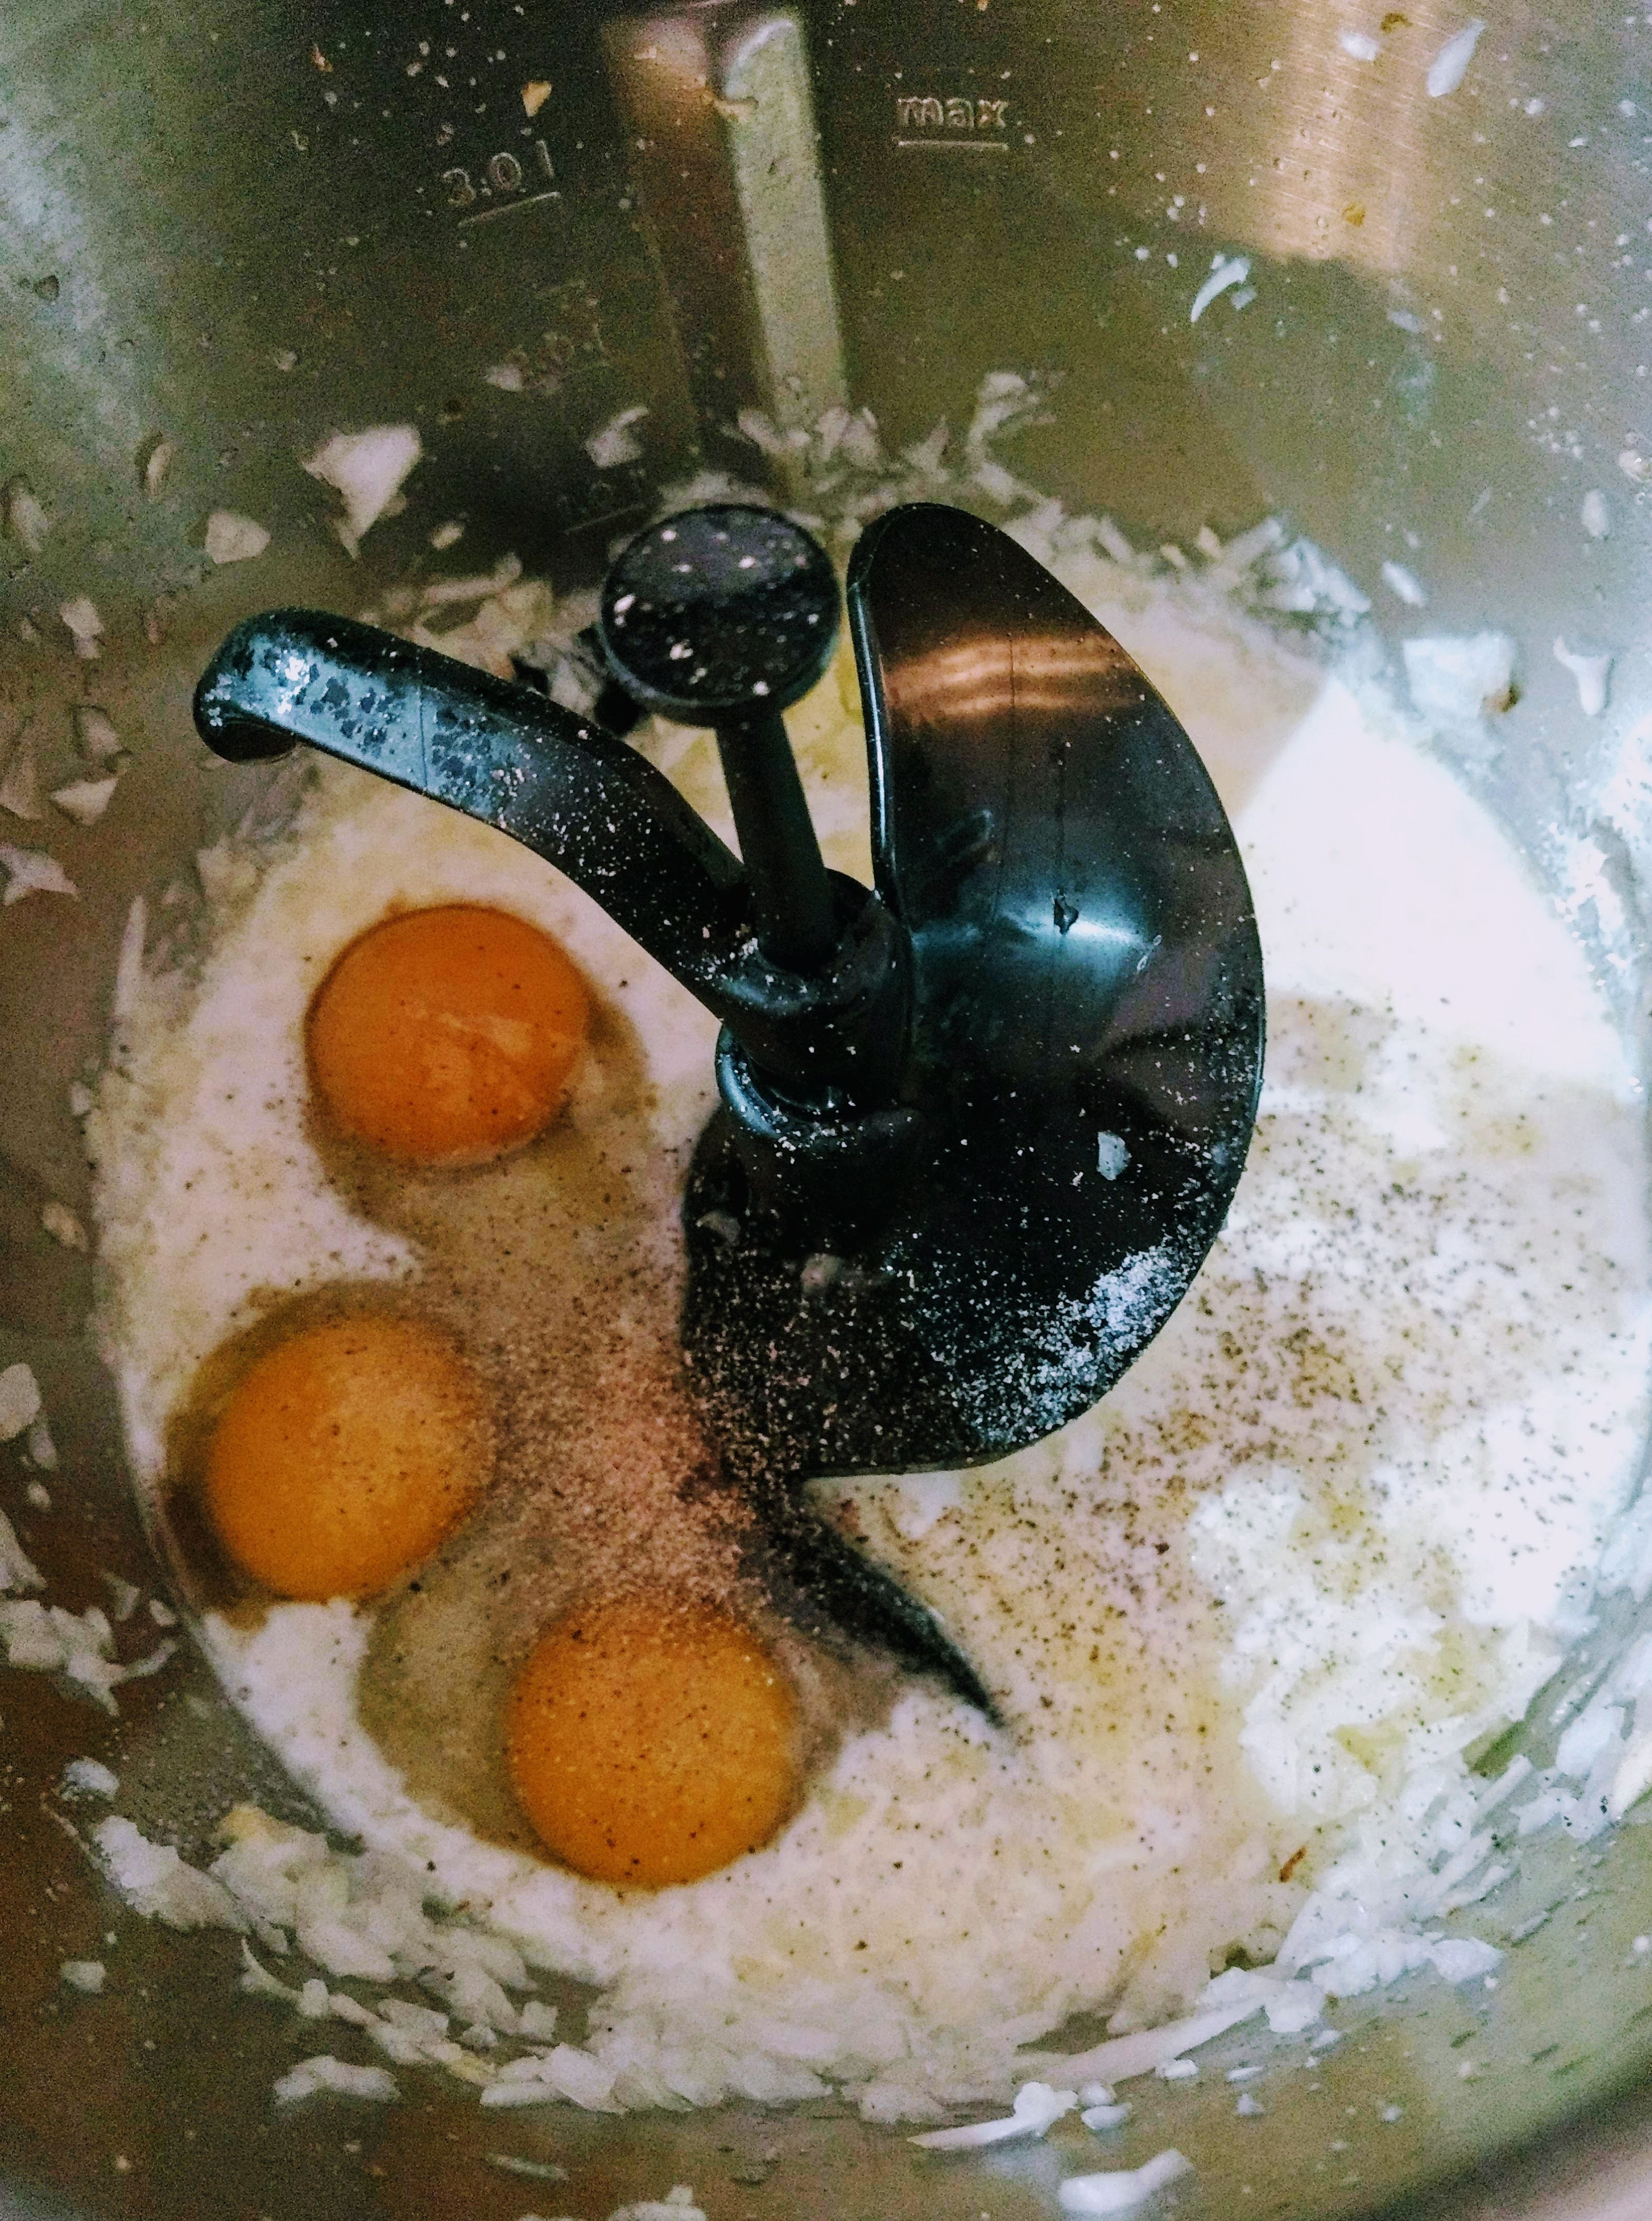 180 ml Milch in den Topf einwiegen, 2 große oder 3 kleine Eier, 1 gestrichenen TL Salz und etwas Pfeffer und Muskat dazugeben. Den Deckel inklusive Messbecher schließen und alles verrühren und erwärmen (3D-Rührer | Stufe 6 | 90 °C | 1 Min.).